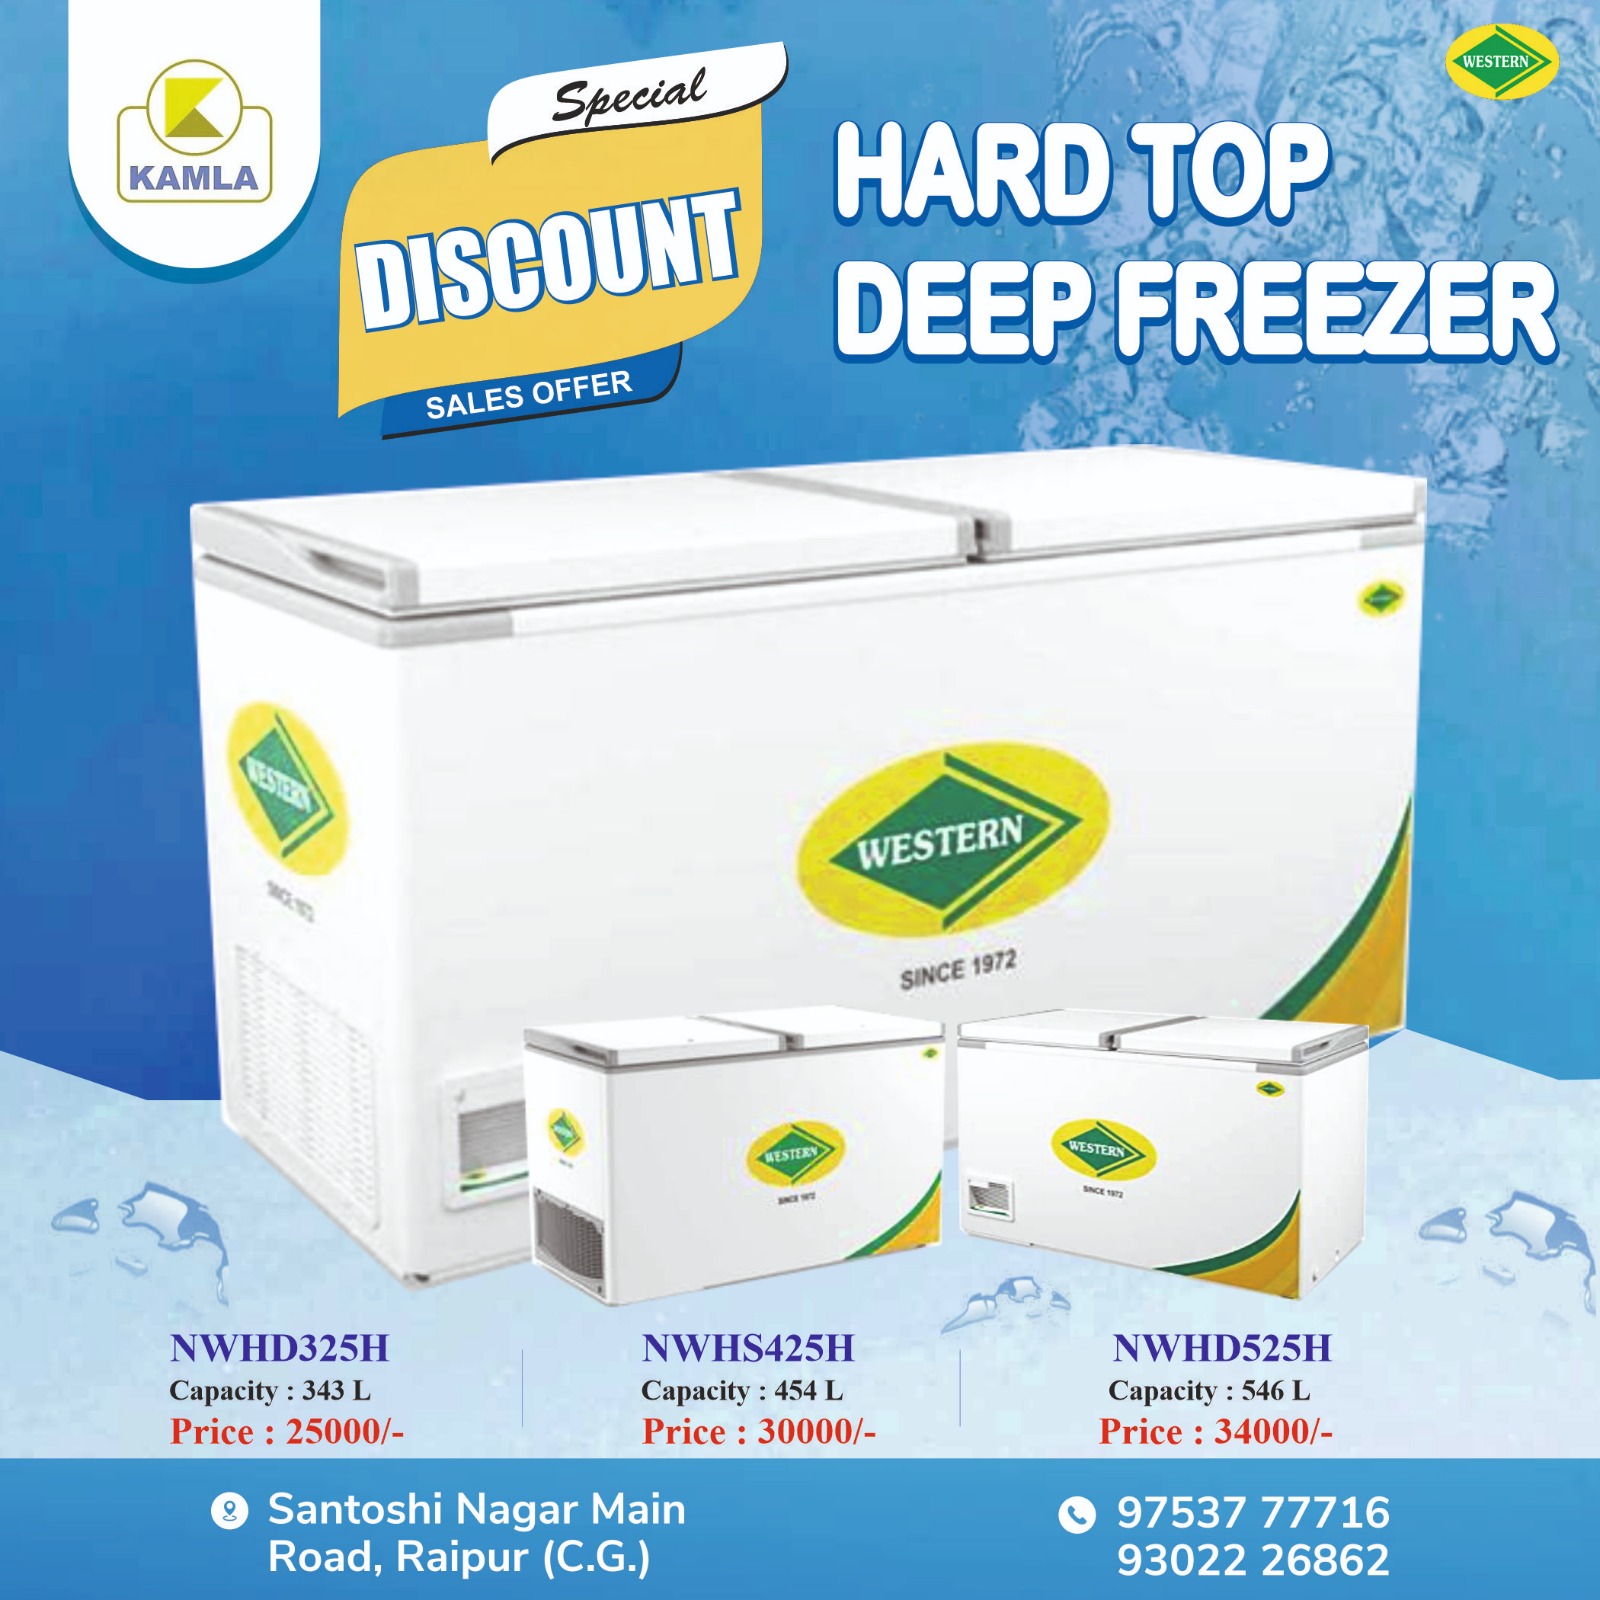 Deep Freezer